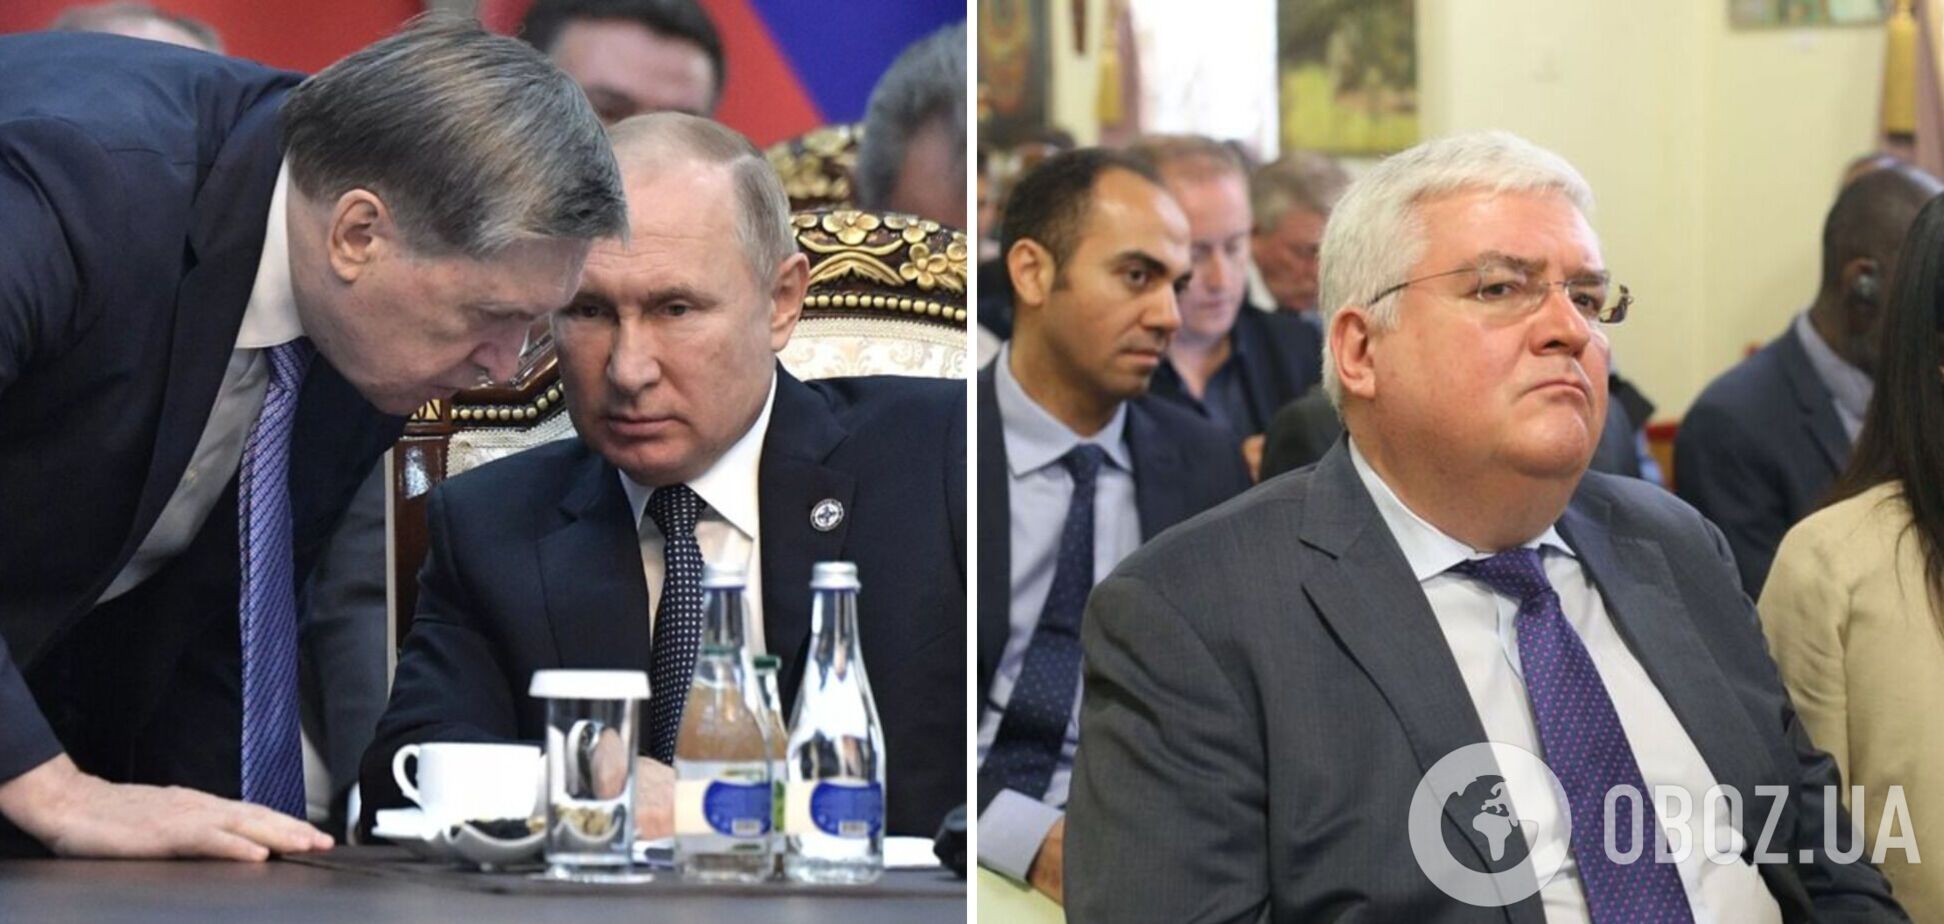 В Кремле готовят массовые отставки чиновников, ответственных за внешнюю политику РФ: в списке одиозные фигуры – The Insider